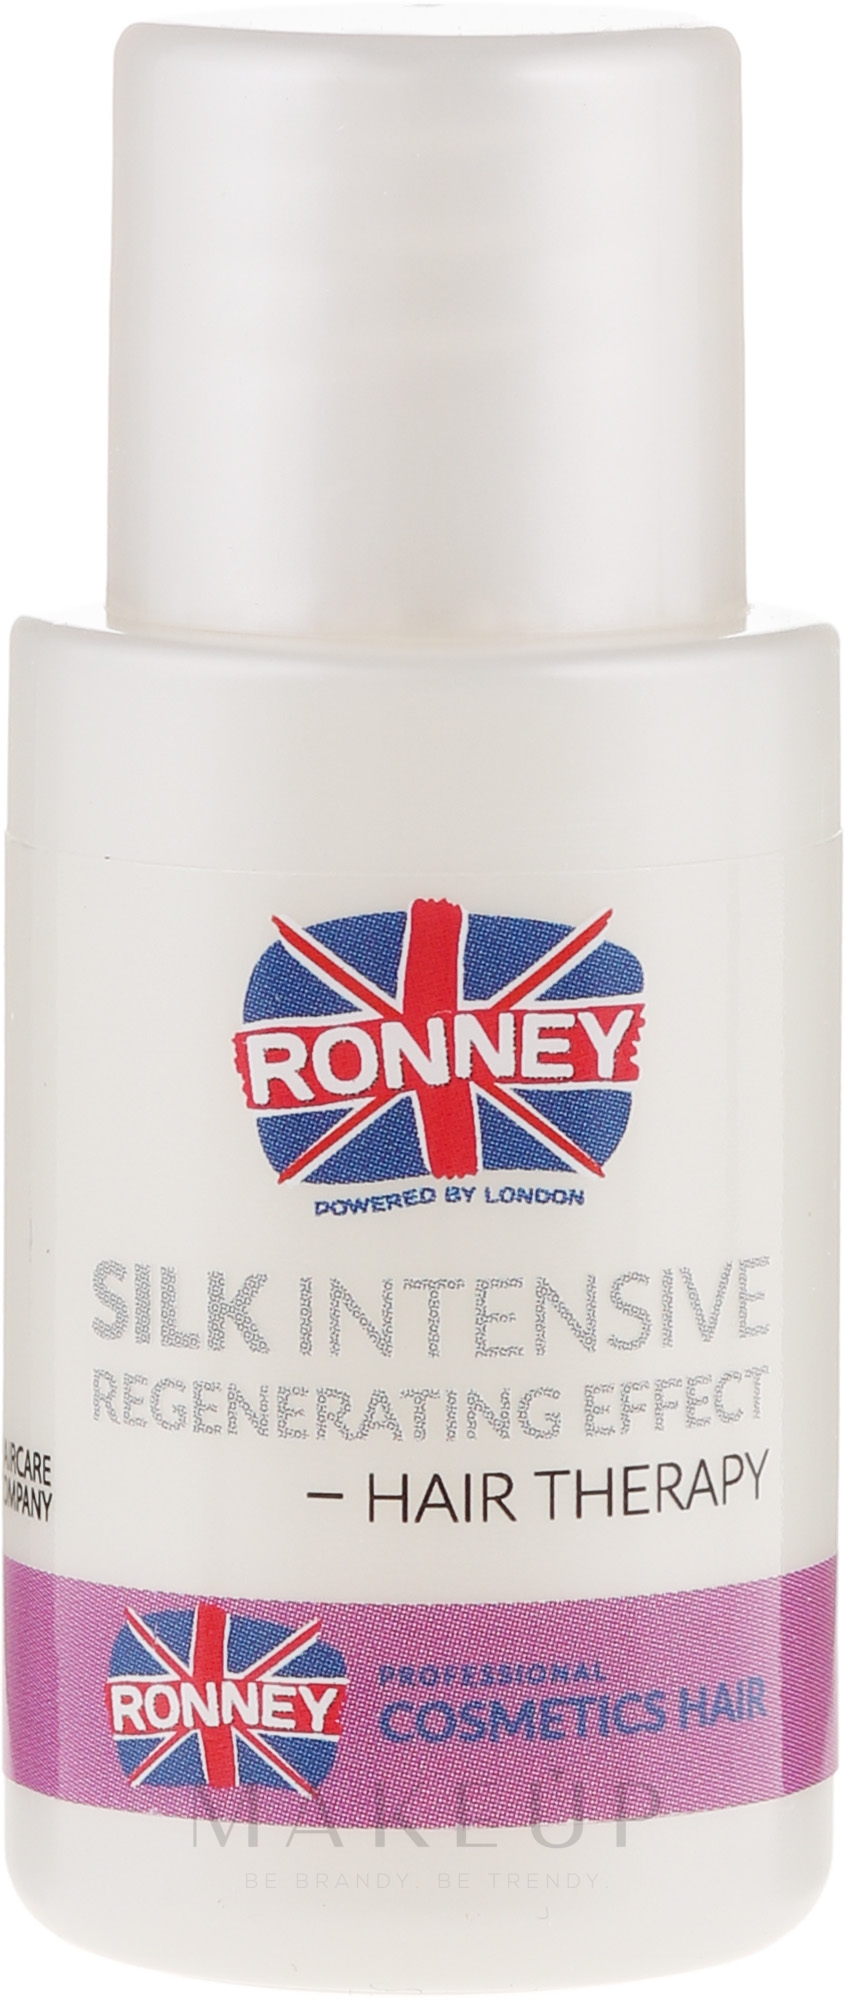 Tief regenerierendes Haaröl für trockenes und beschädigtes Haar - Ronney Silk Intensive Regenerating Effect Hair Therapy — Bild 15 ml